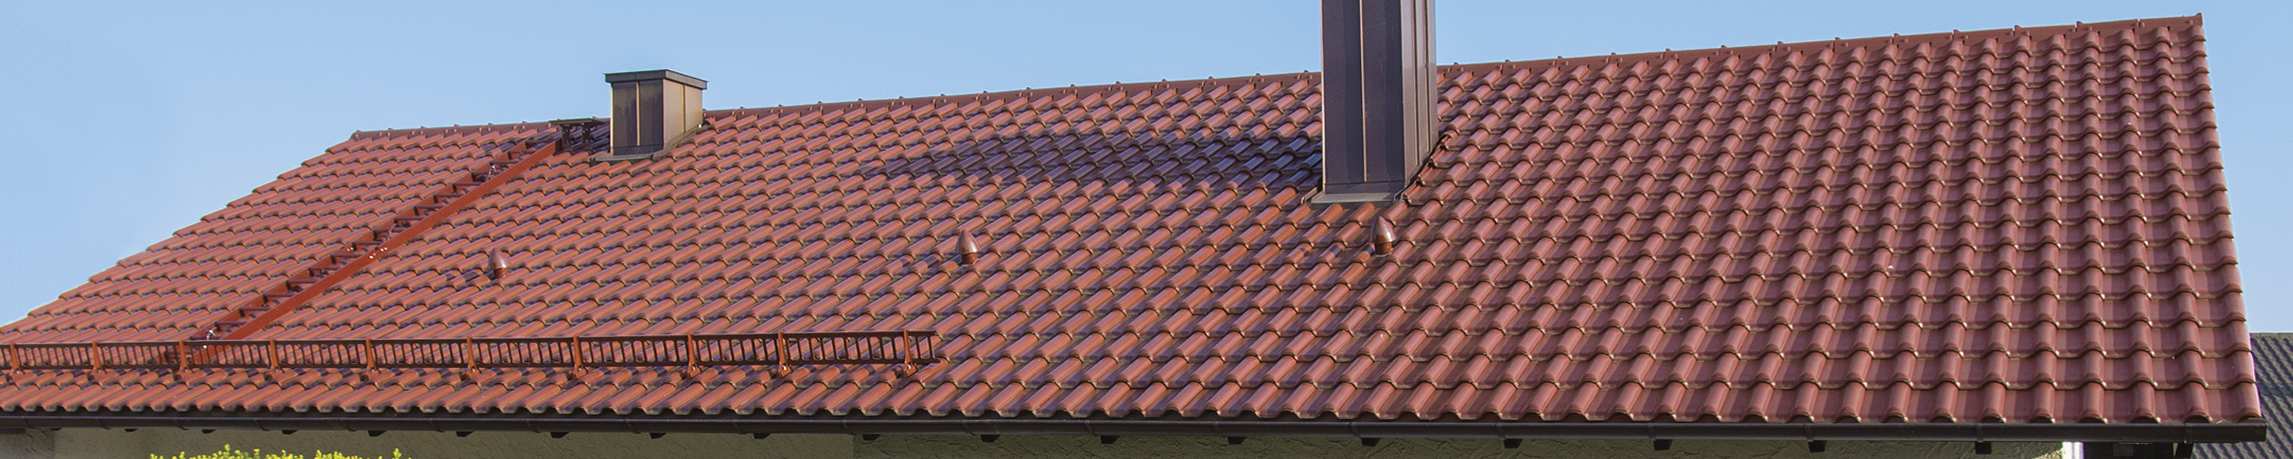 Spodnia wentylacja połaci – gwarancja trwałości dachu